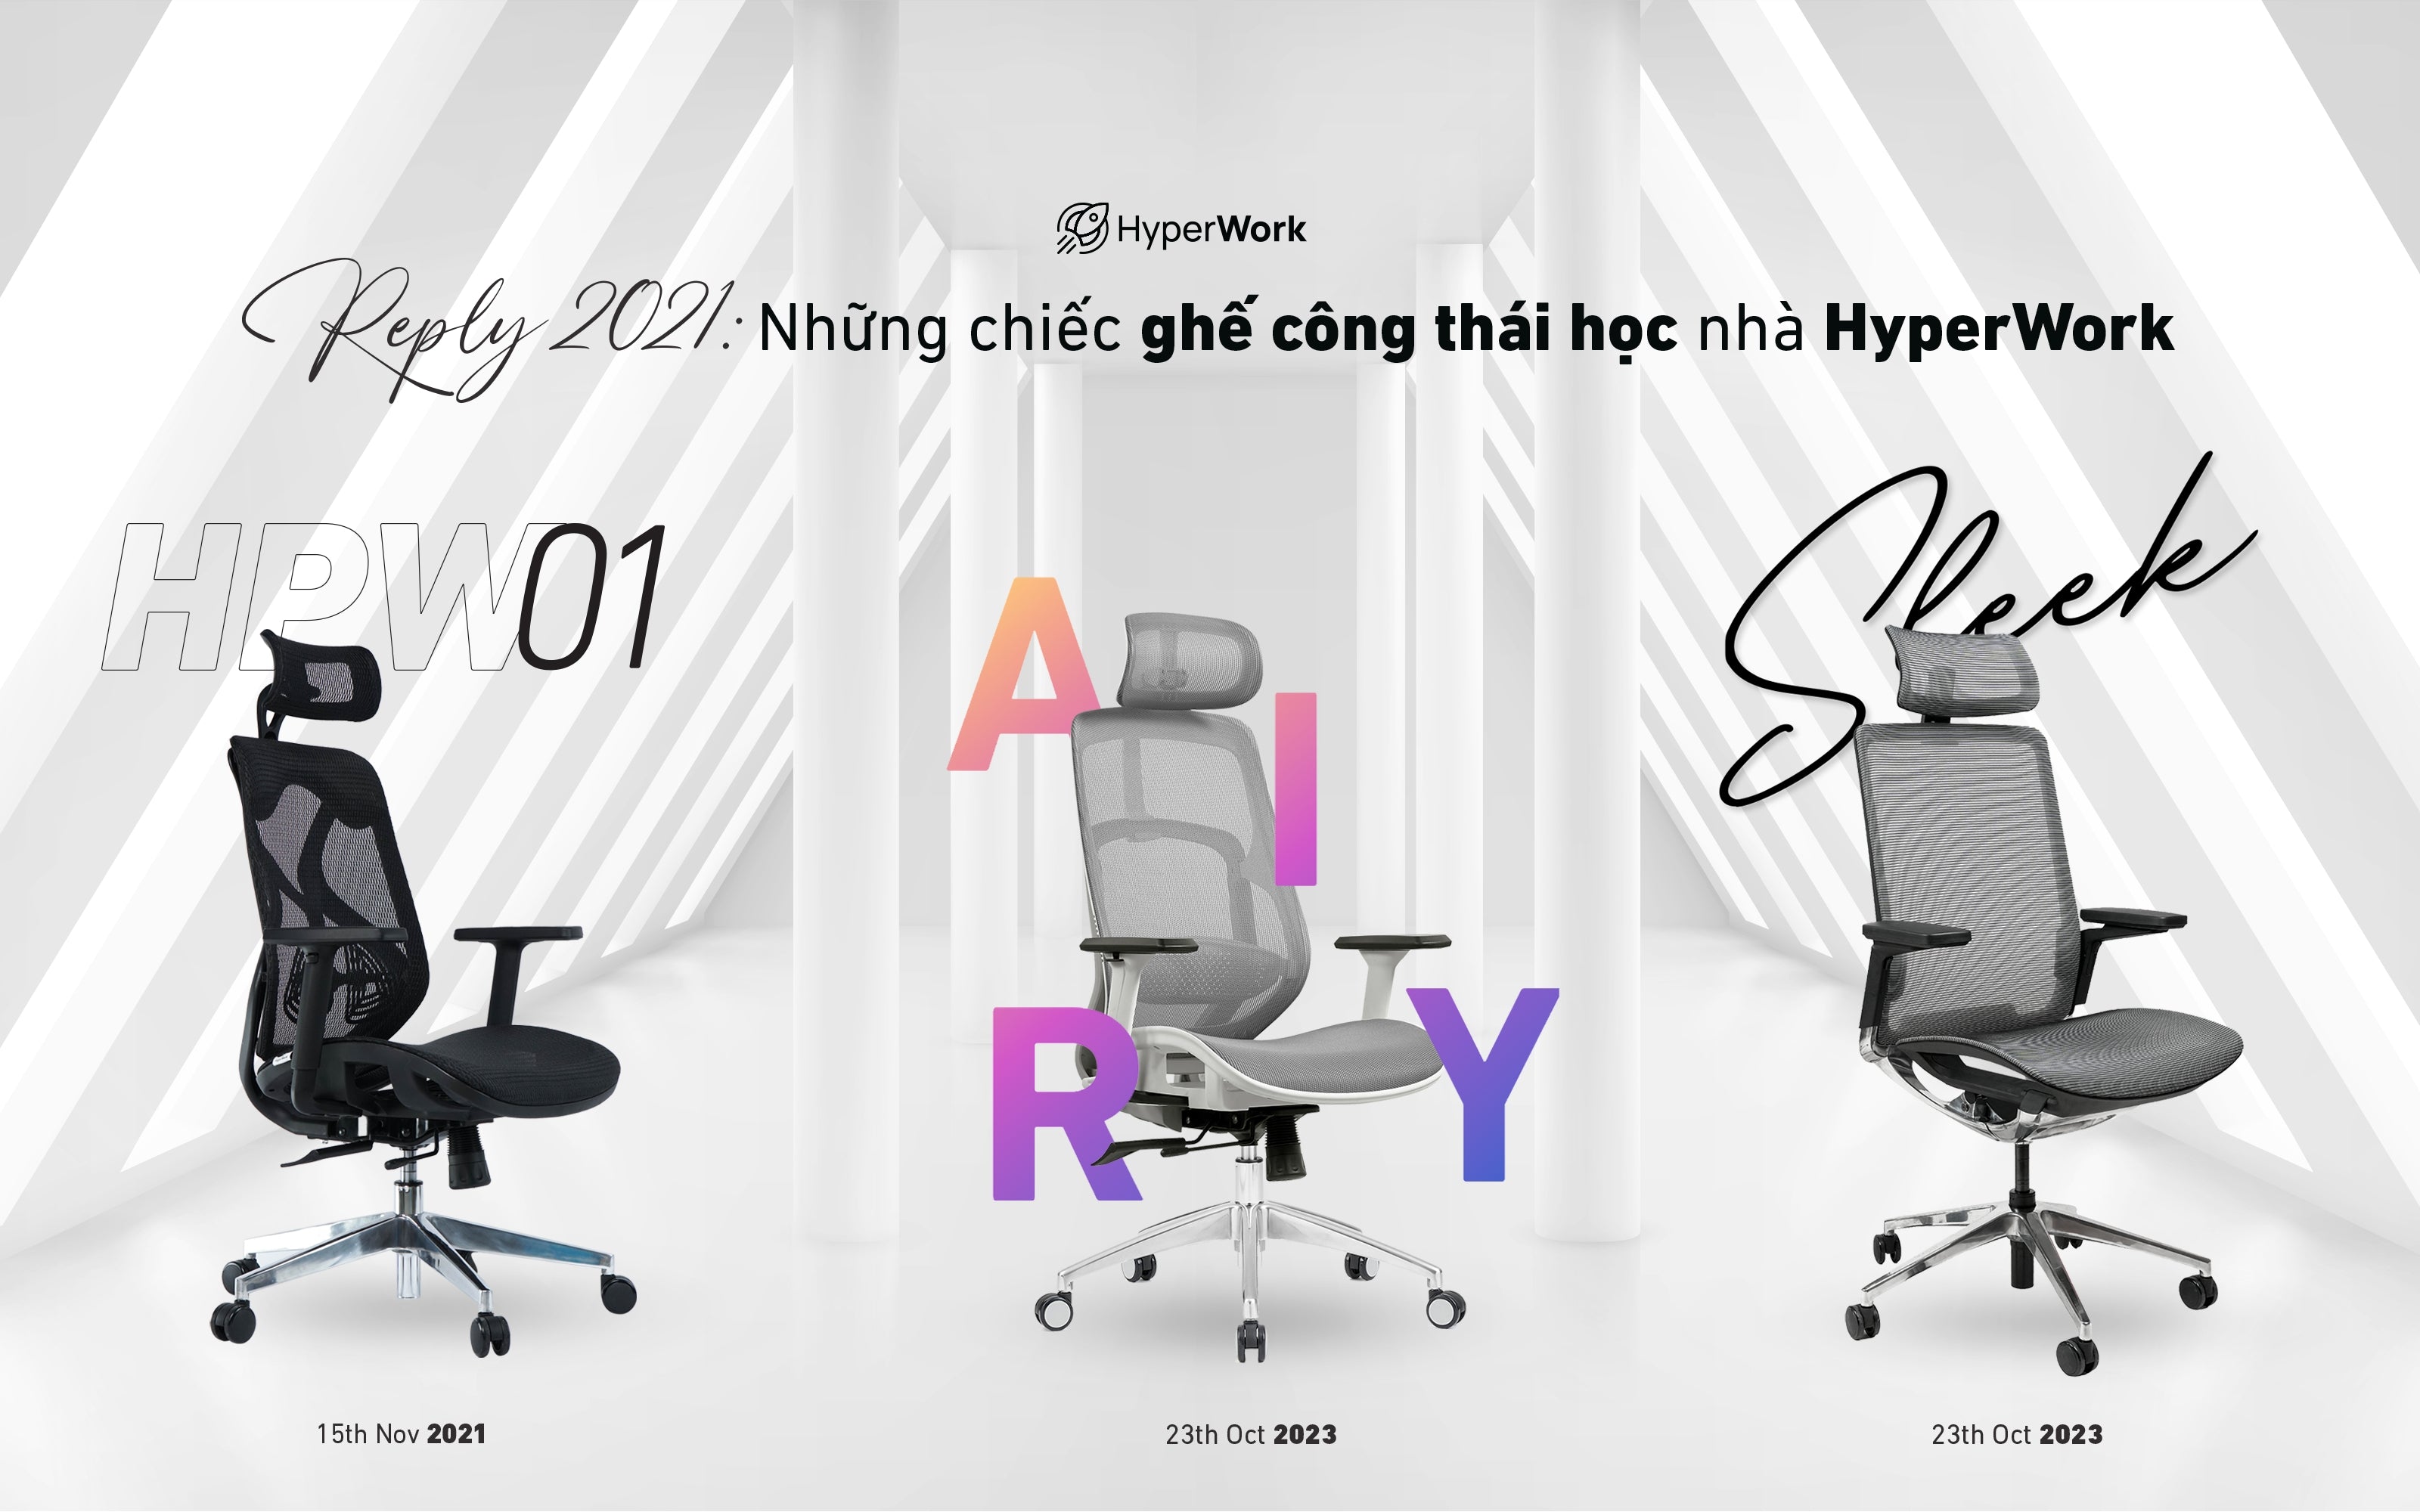 Reply 2021: Những chiếc ghế công thái học của HyperWork